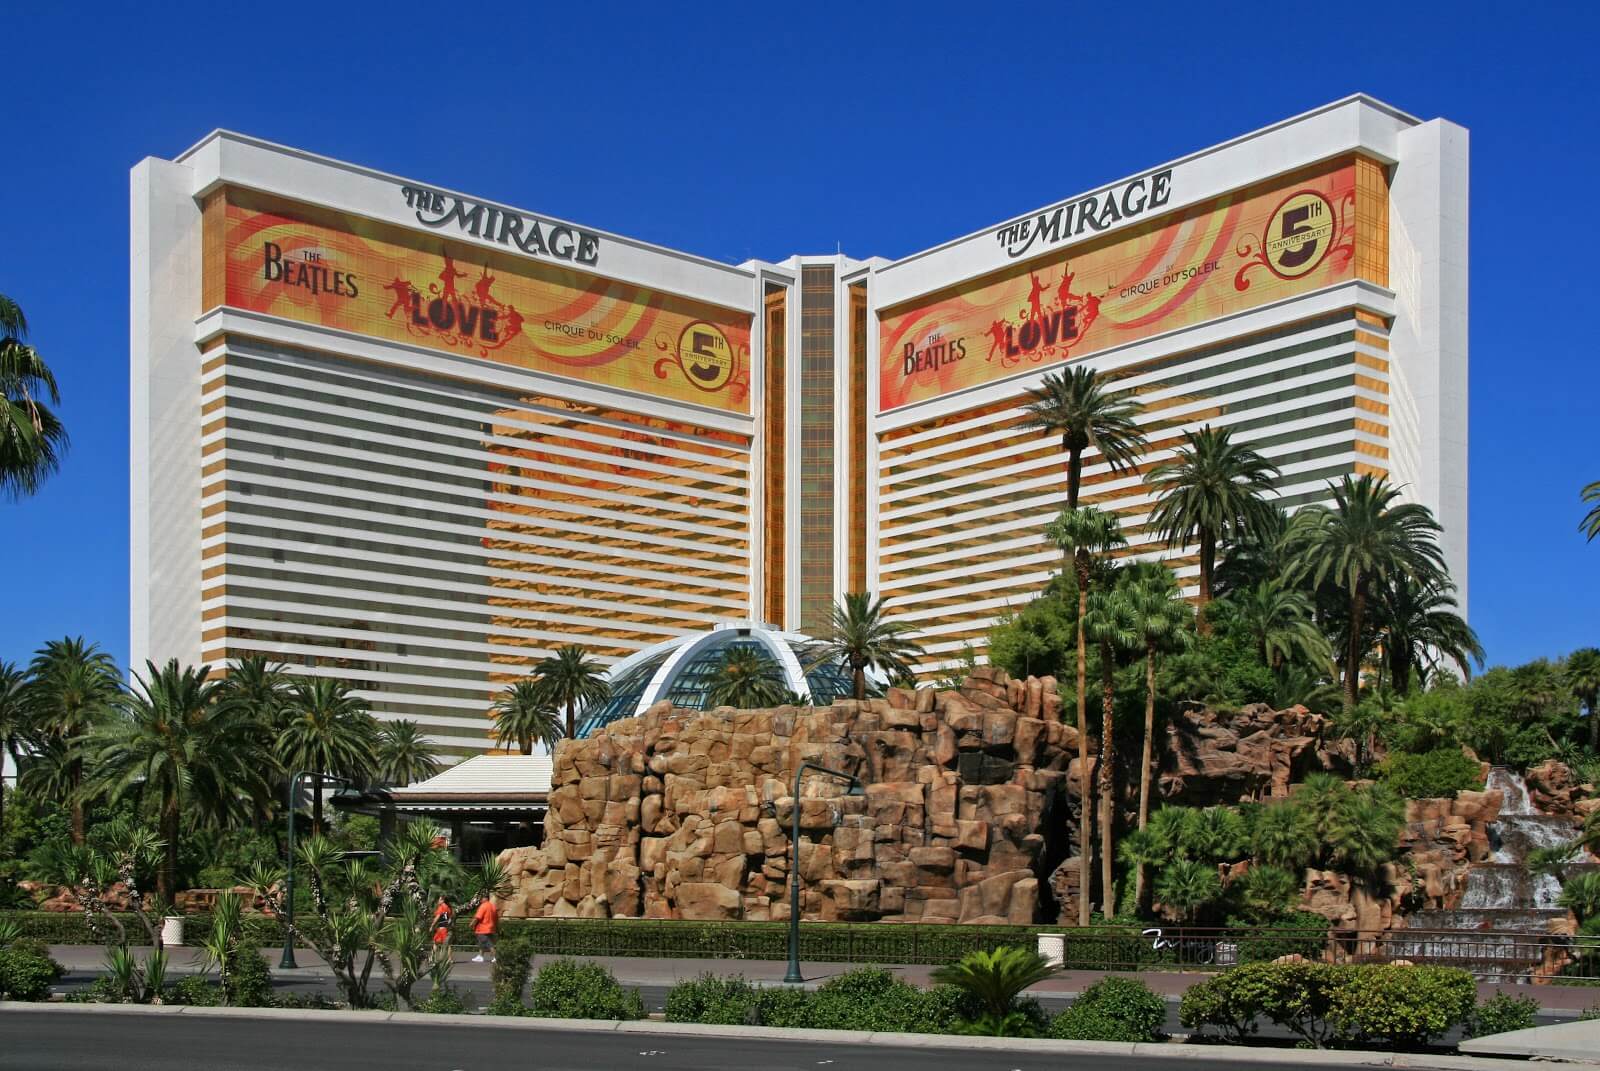  Os melhores casinos do mundo 